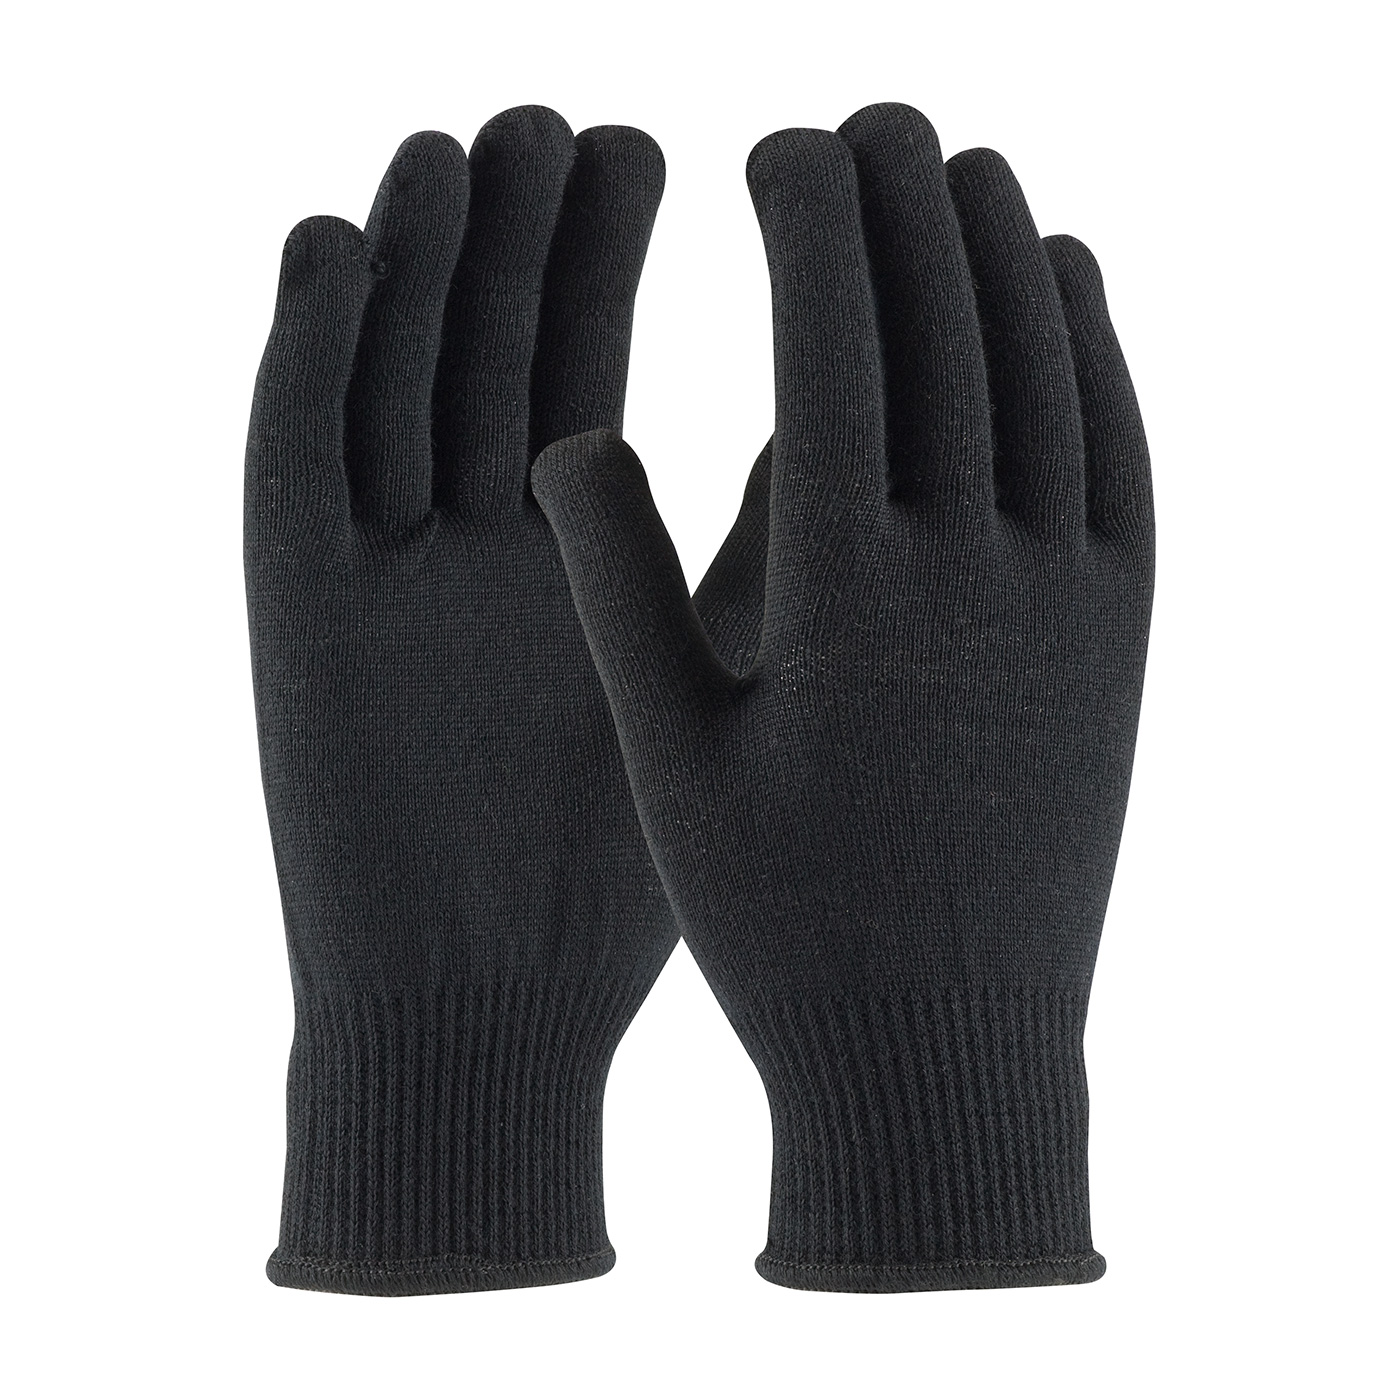 41-130 PIP® Seamless Knit Merino® Wool Glove - 13 Gauge

